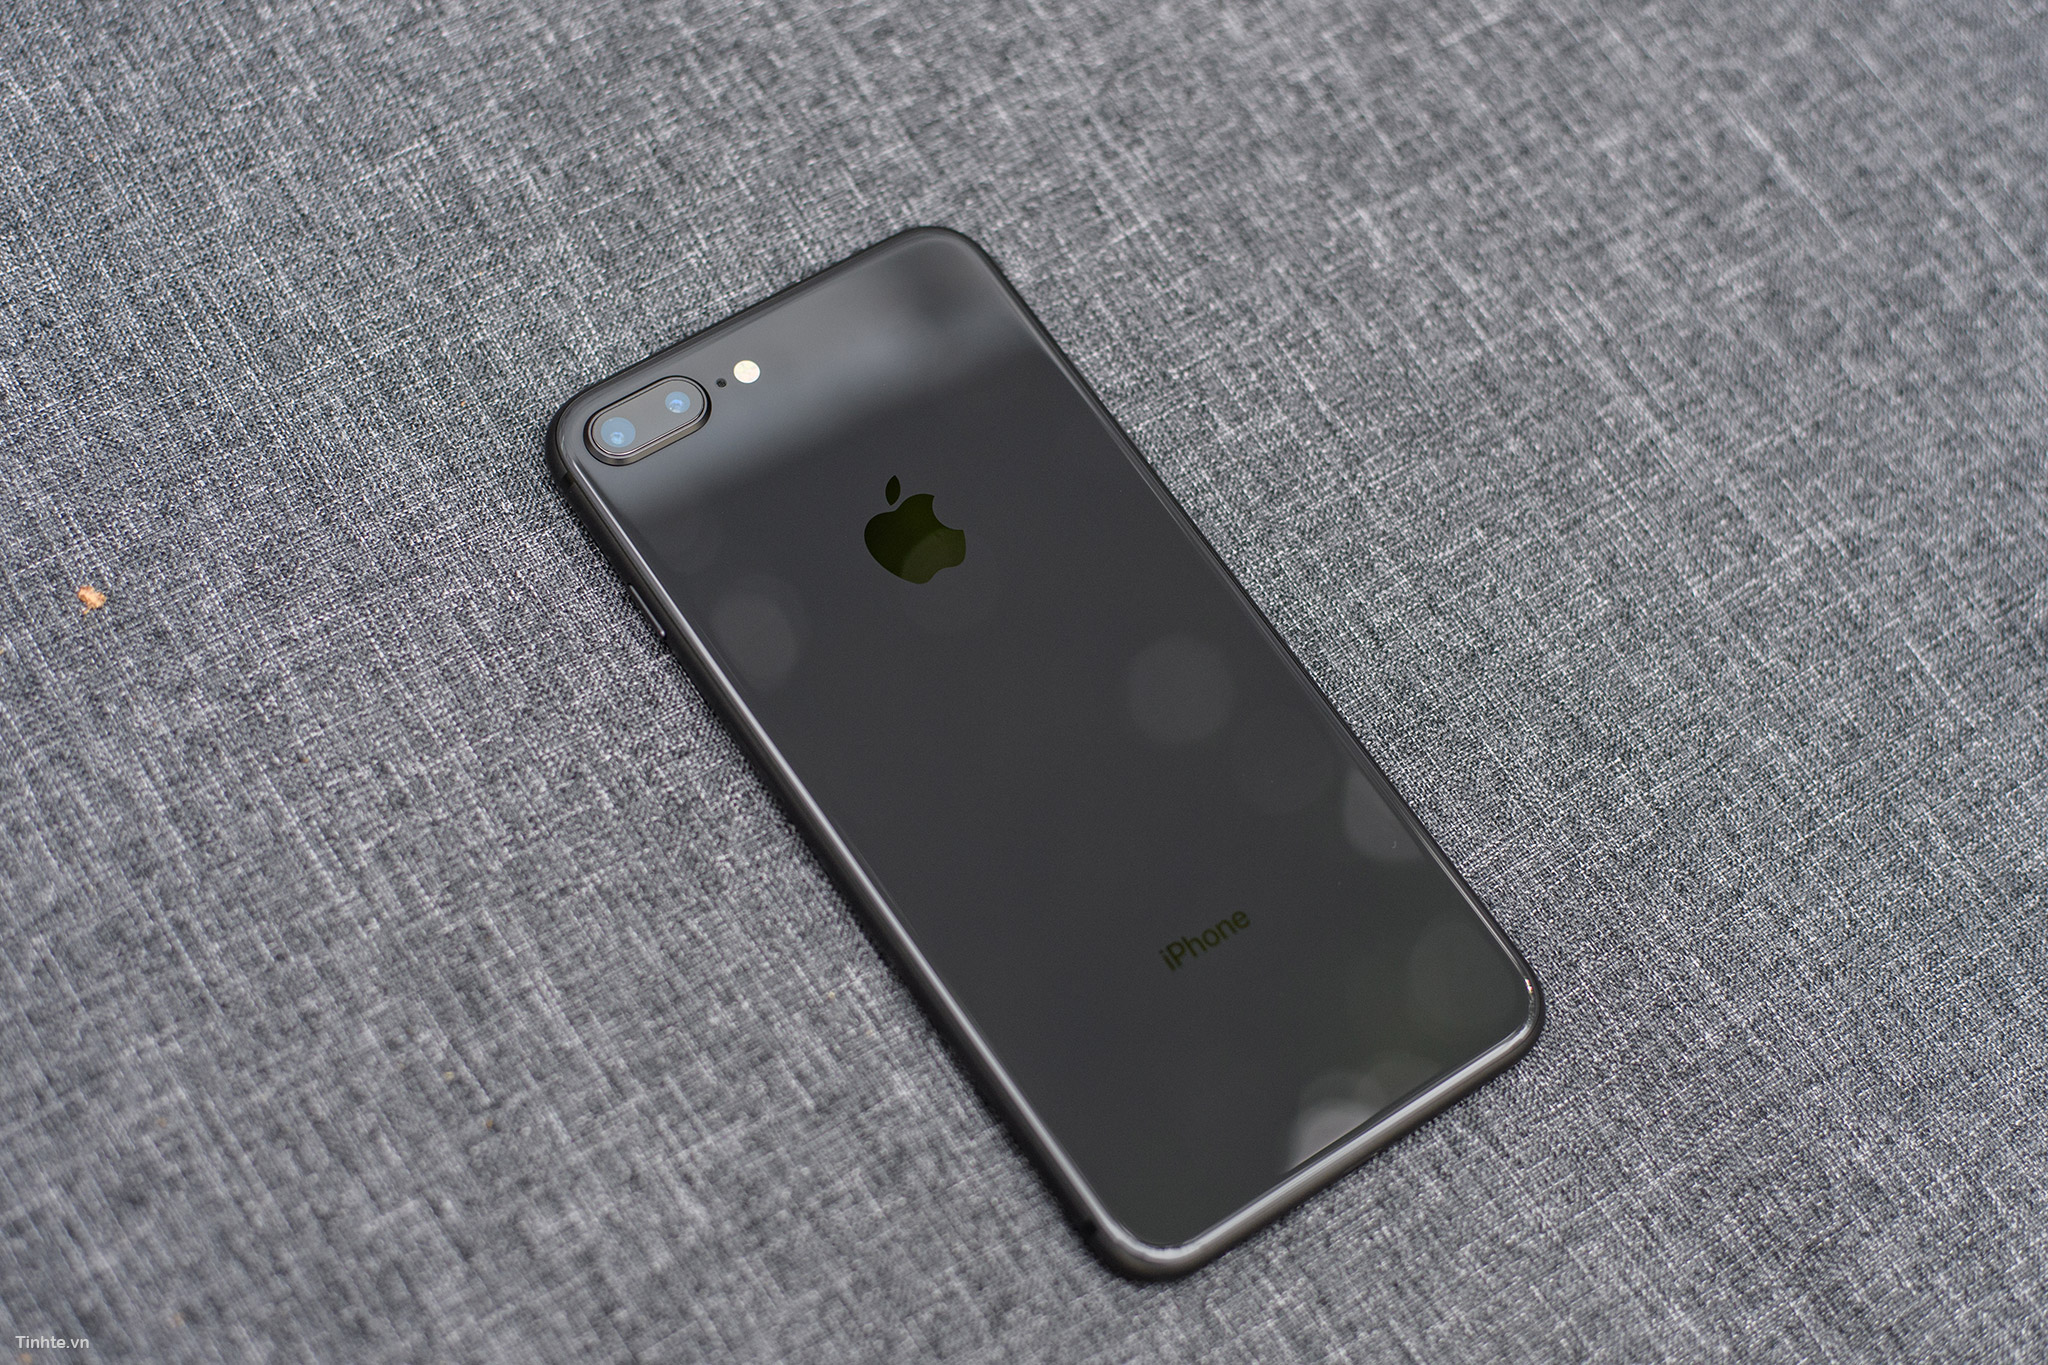 Đến với màu xám lông chuột của iPhone 8 Plus, bạn sẽ thấy sự sang trọng, tinh tế màu sắc chưa từng có. Chỉ cần nhìn vào những hình ảnh liên quan đến màu này, bạn sẽ thấy được sự đặc biệt của sản phẩm.